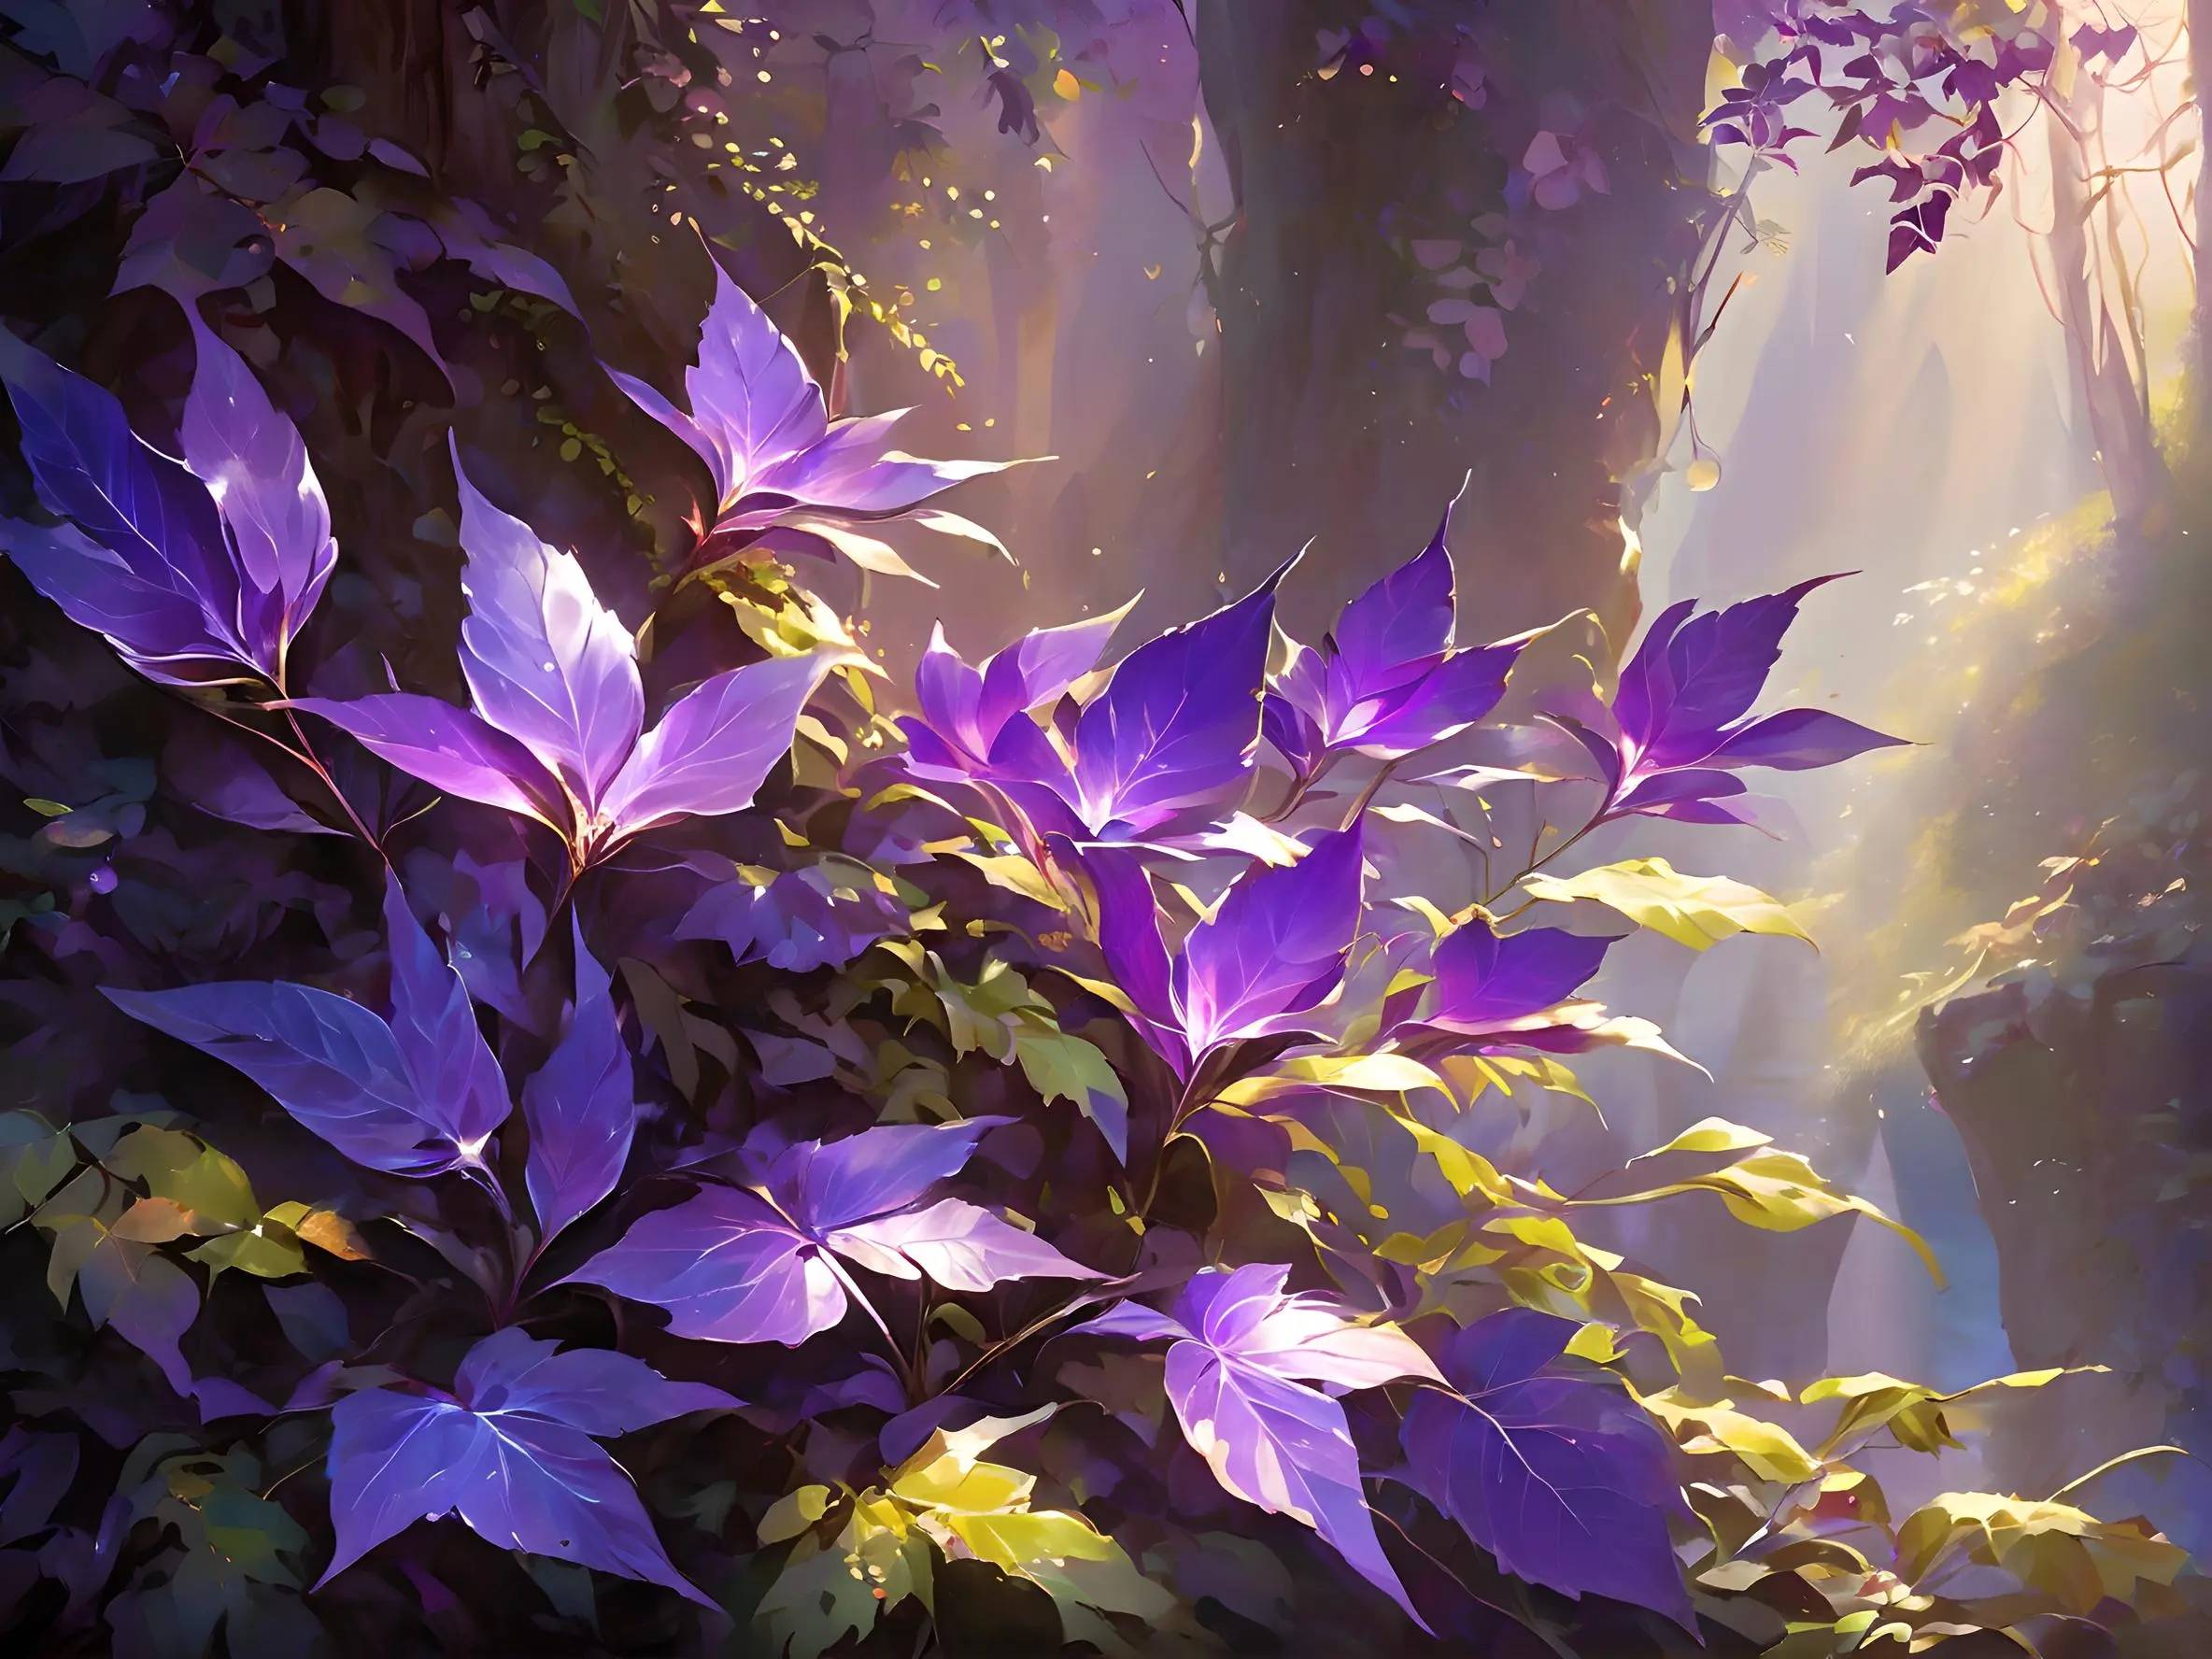 观者发现高耸的悬崖上生长着奇异的植被,它们的树叶呈现出梦幻的紫色